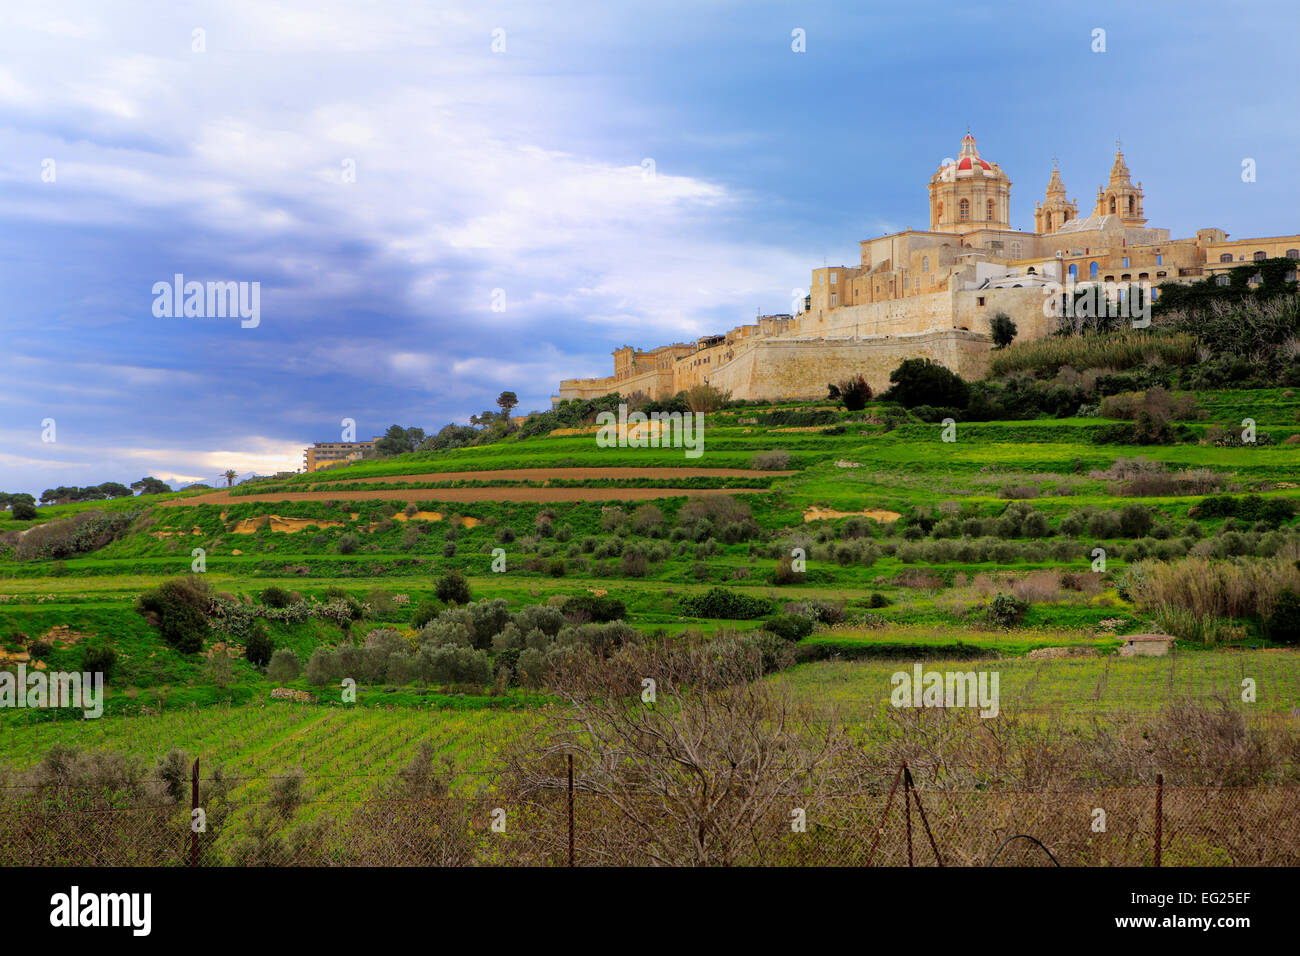 Vue de la ville Mdina, Malte Banque D'Images